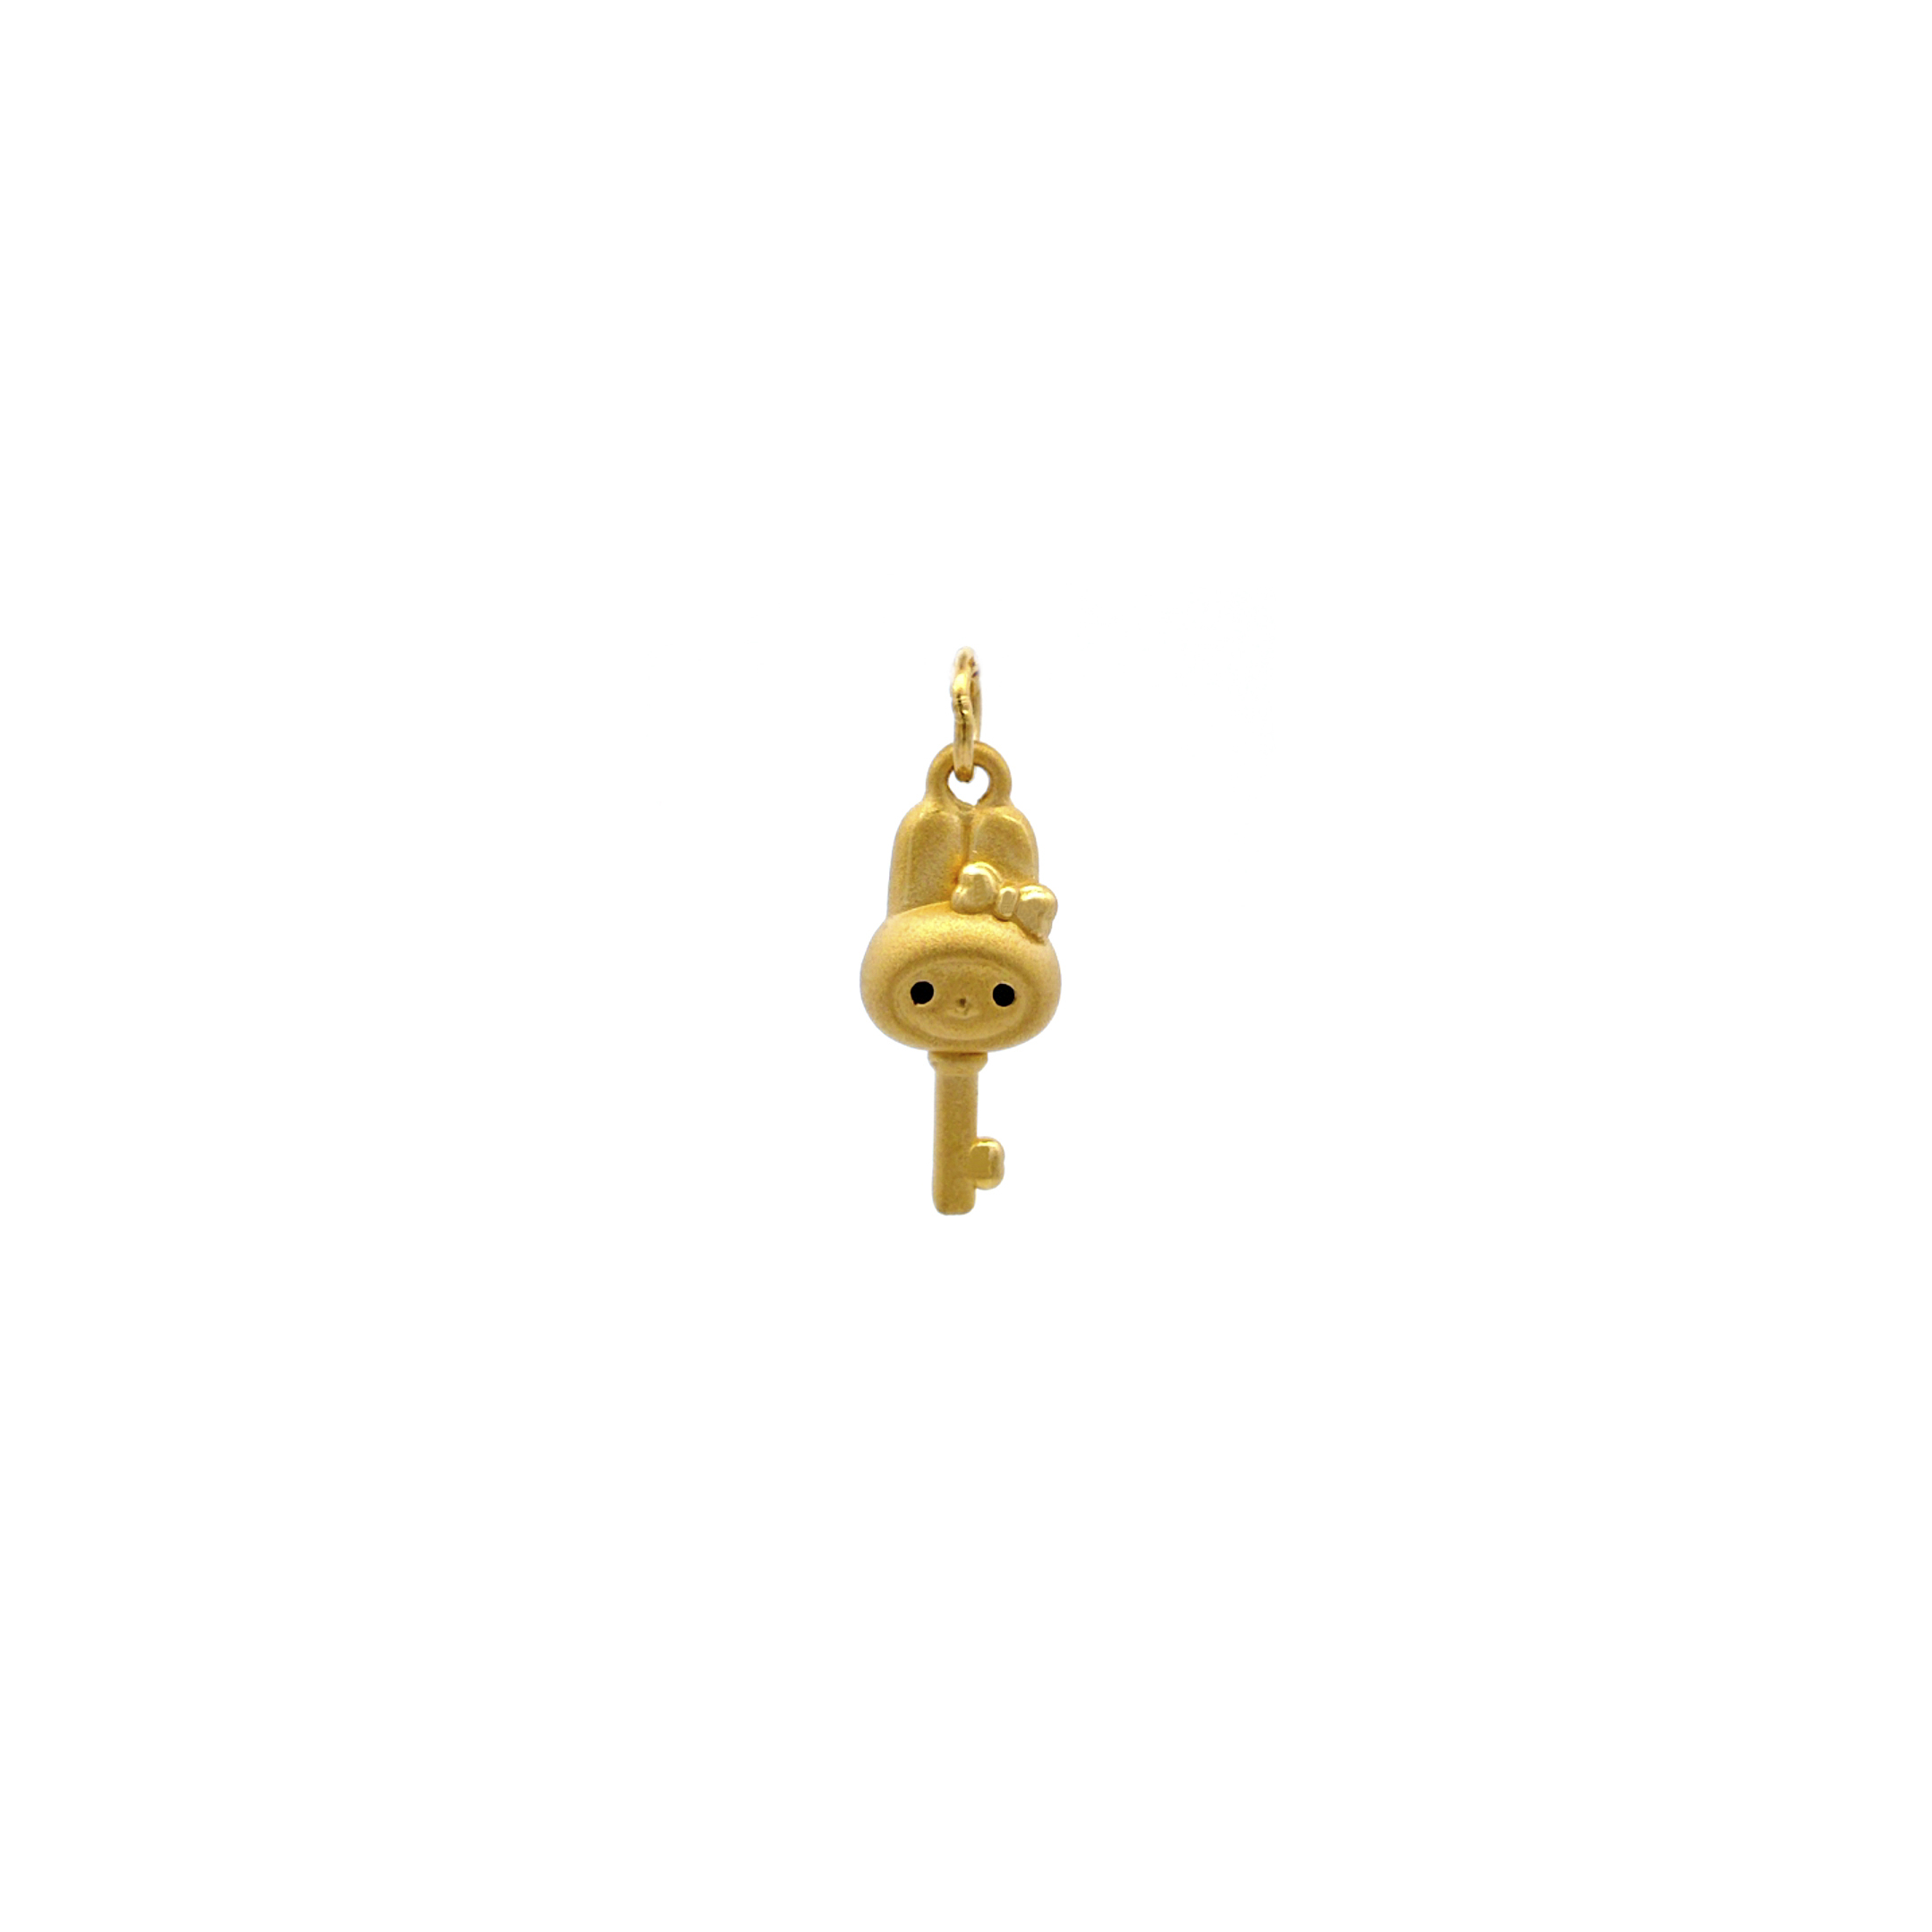 TIANSI 999 (24K) Gold Cartoon Key Pendant